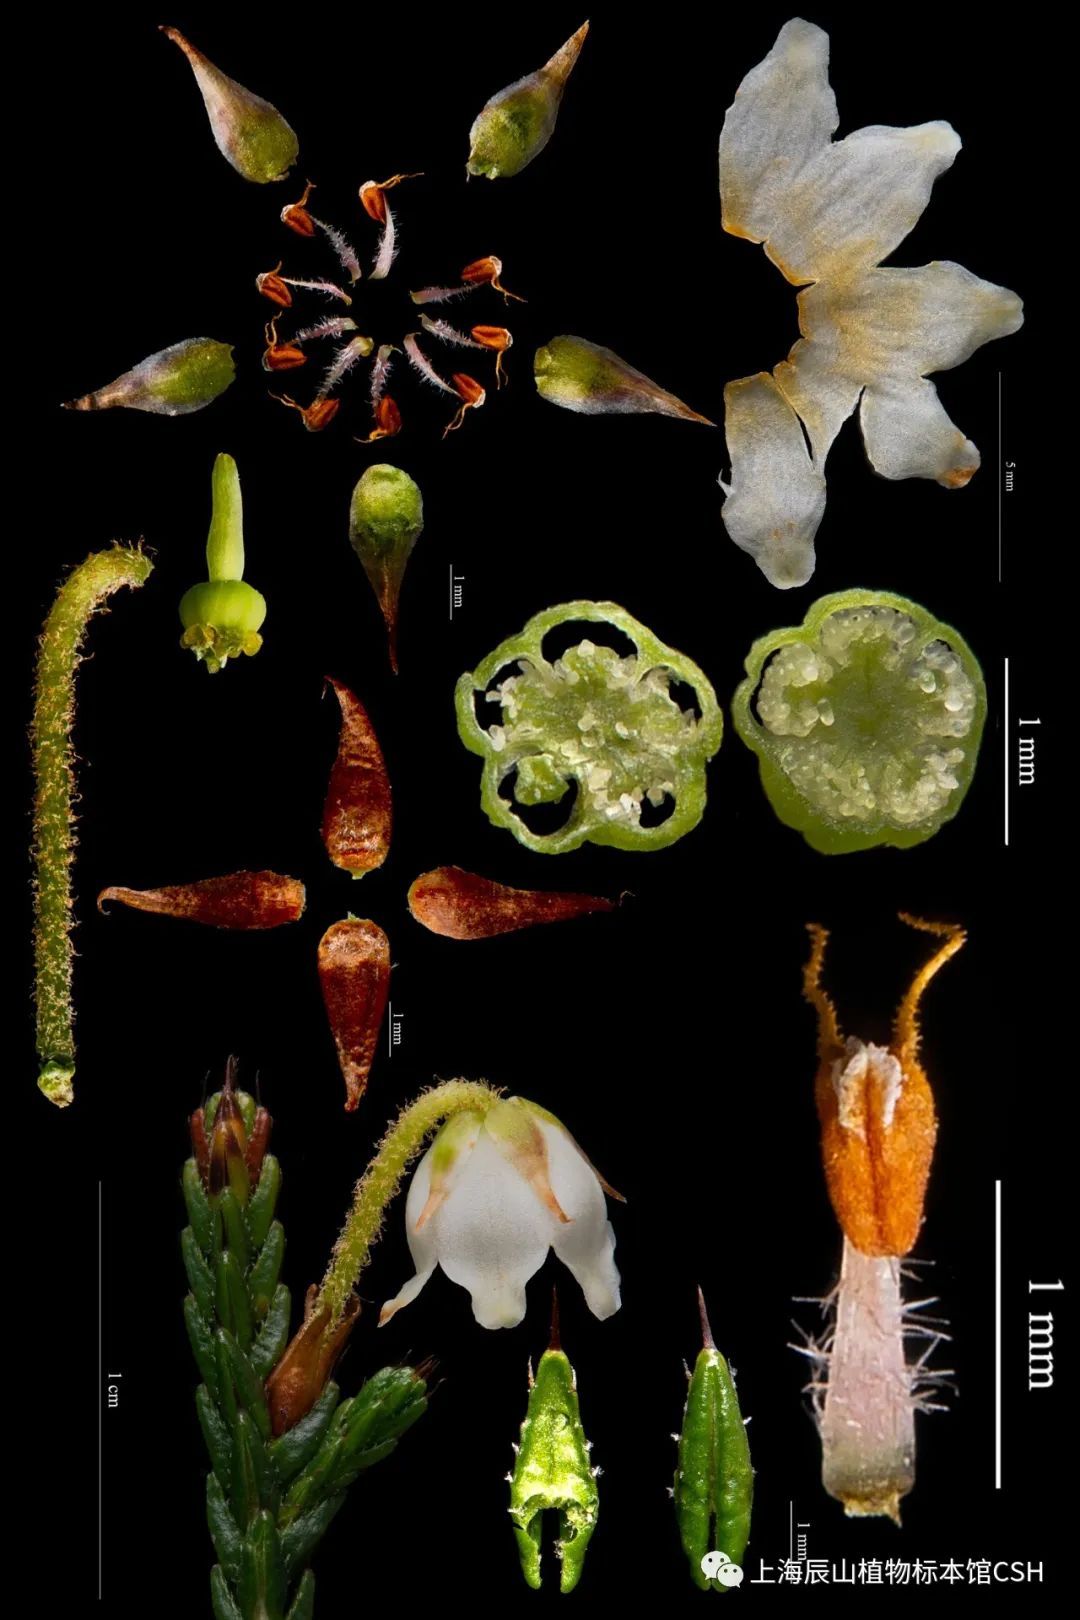 流程与技巧花程式与花图式能够非常准确地传达某一类植物最大的共同点